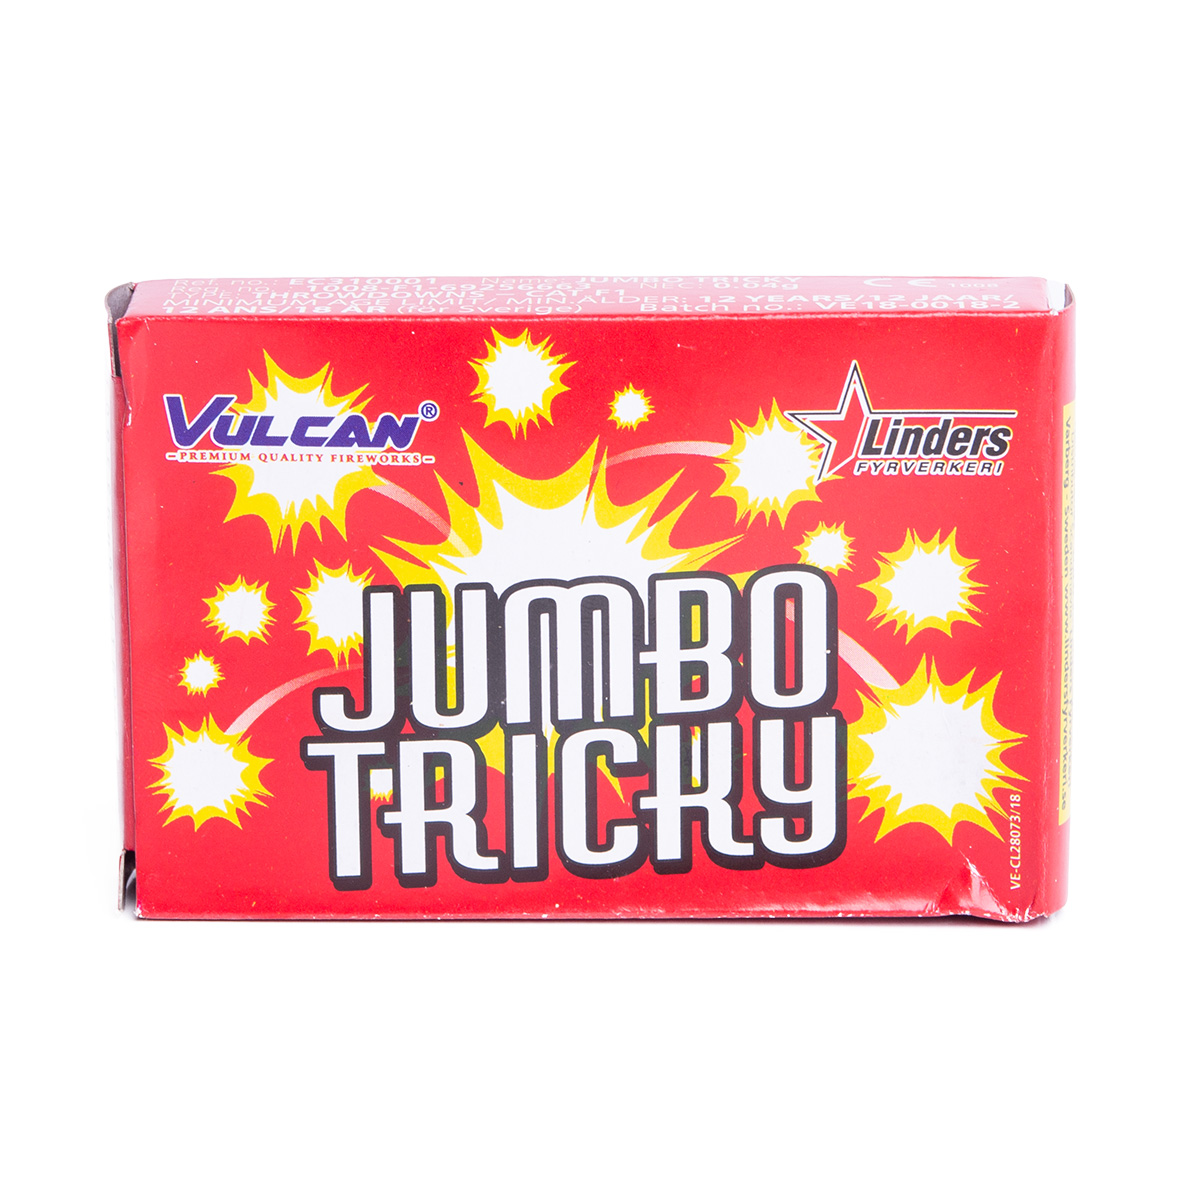 Jumbo Tricky - smällareproduktzoombild #2